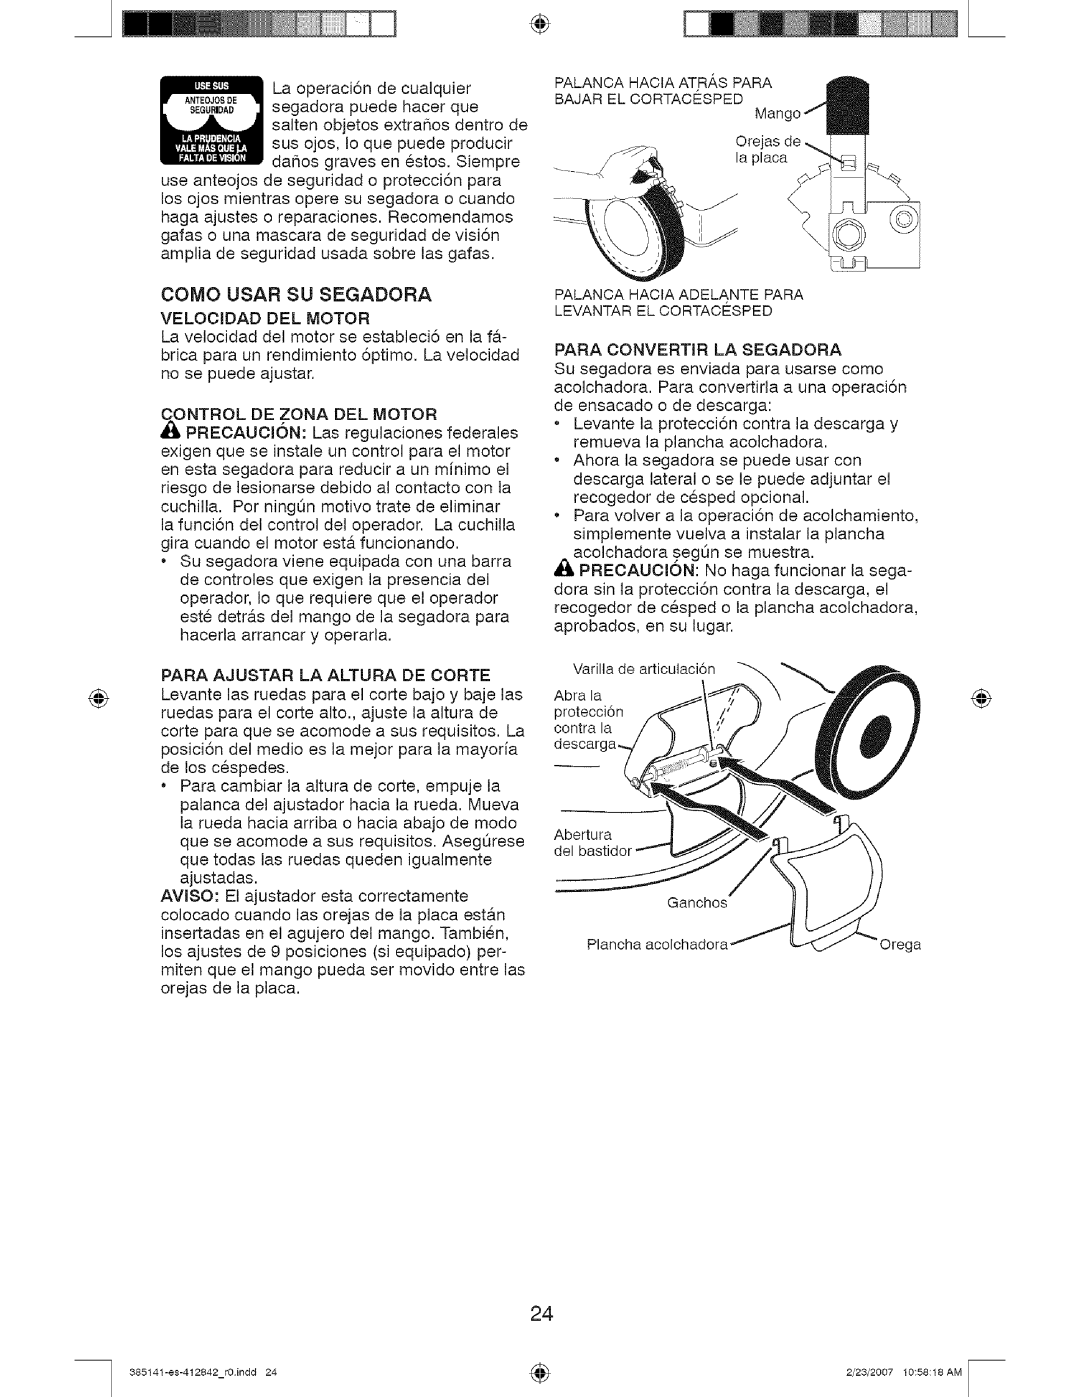 Craftsman 917, 385141 manual Como Usar Su Segadora Velooidad Del Motor 